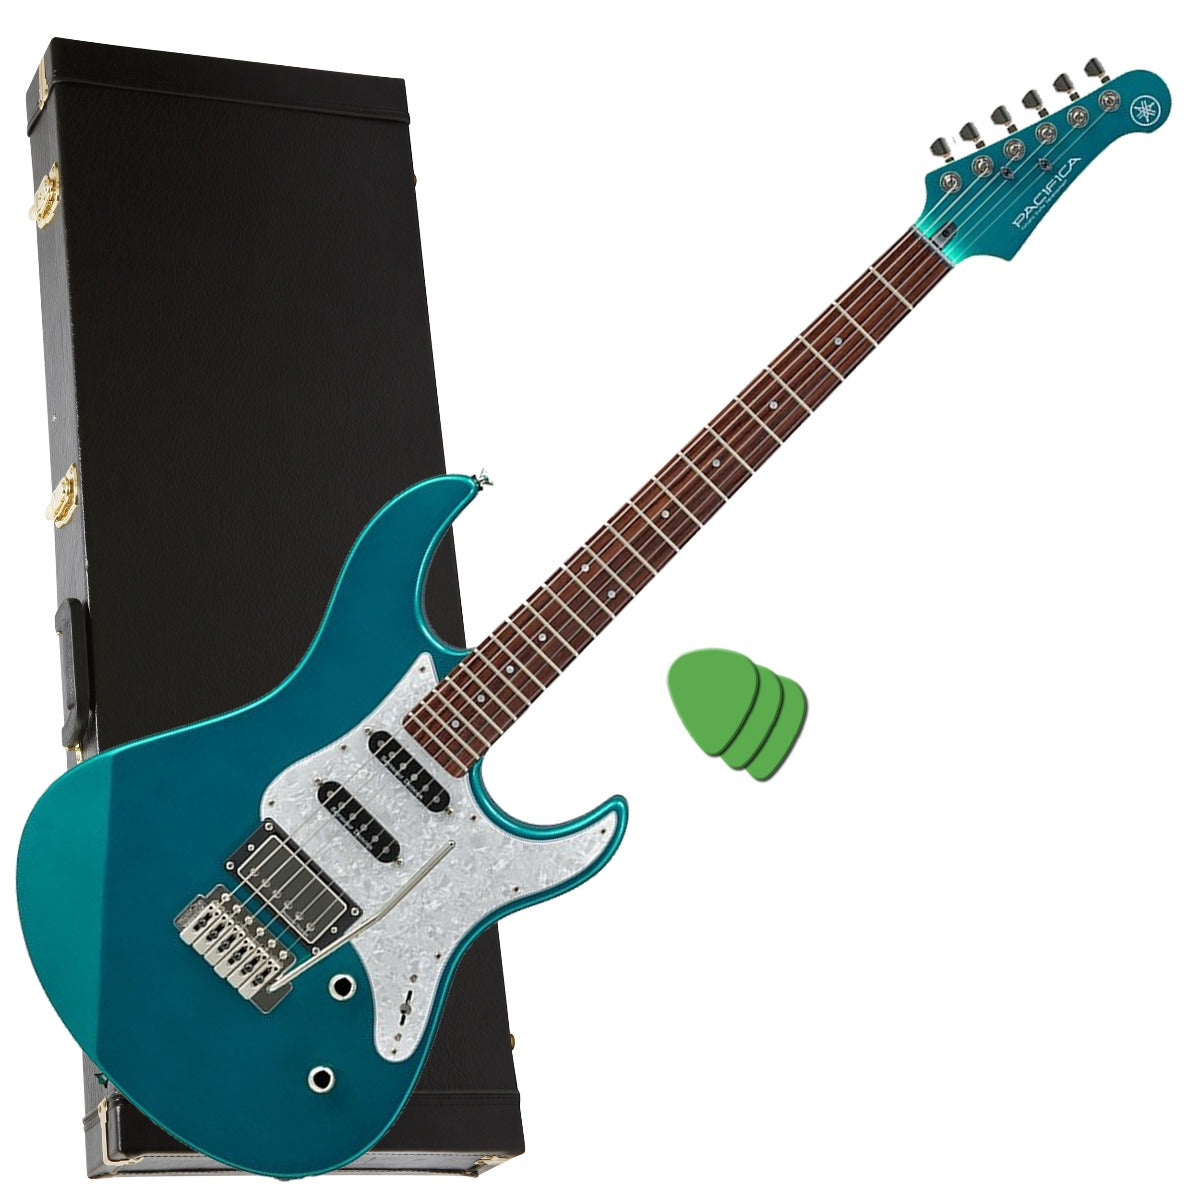 Yamaha Pacifica PAC612VIIX Electric Guitar - Teal Green PERFORMER PAK